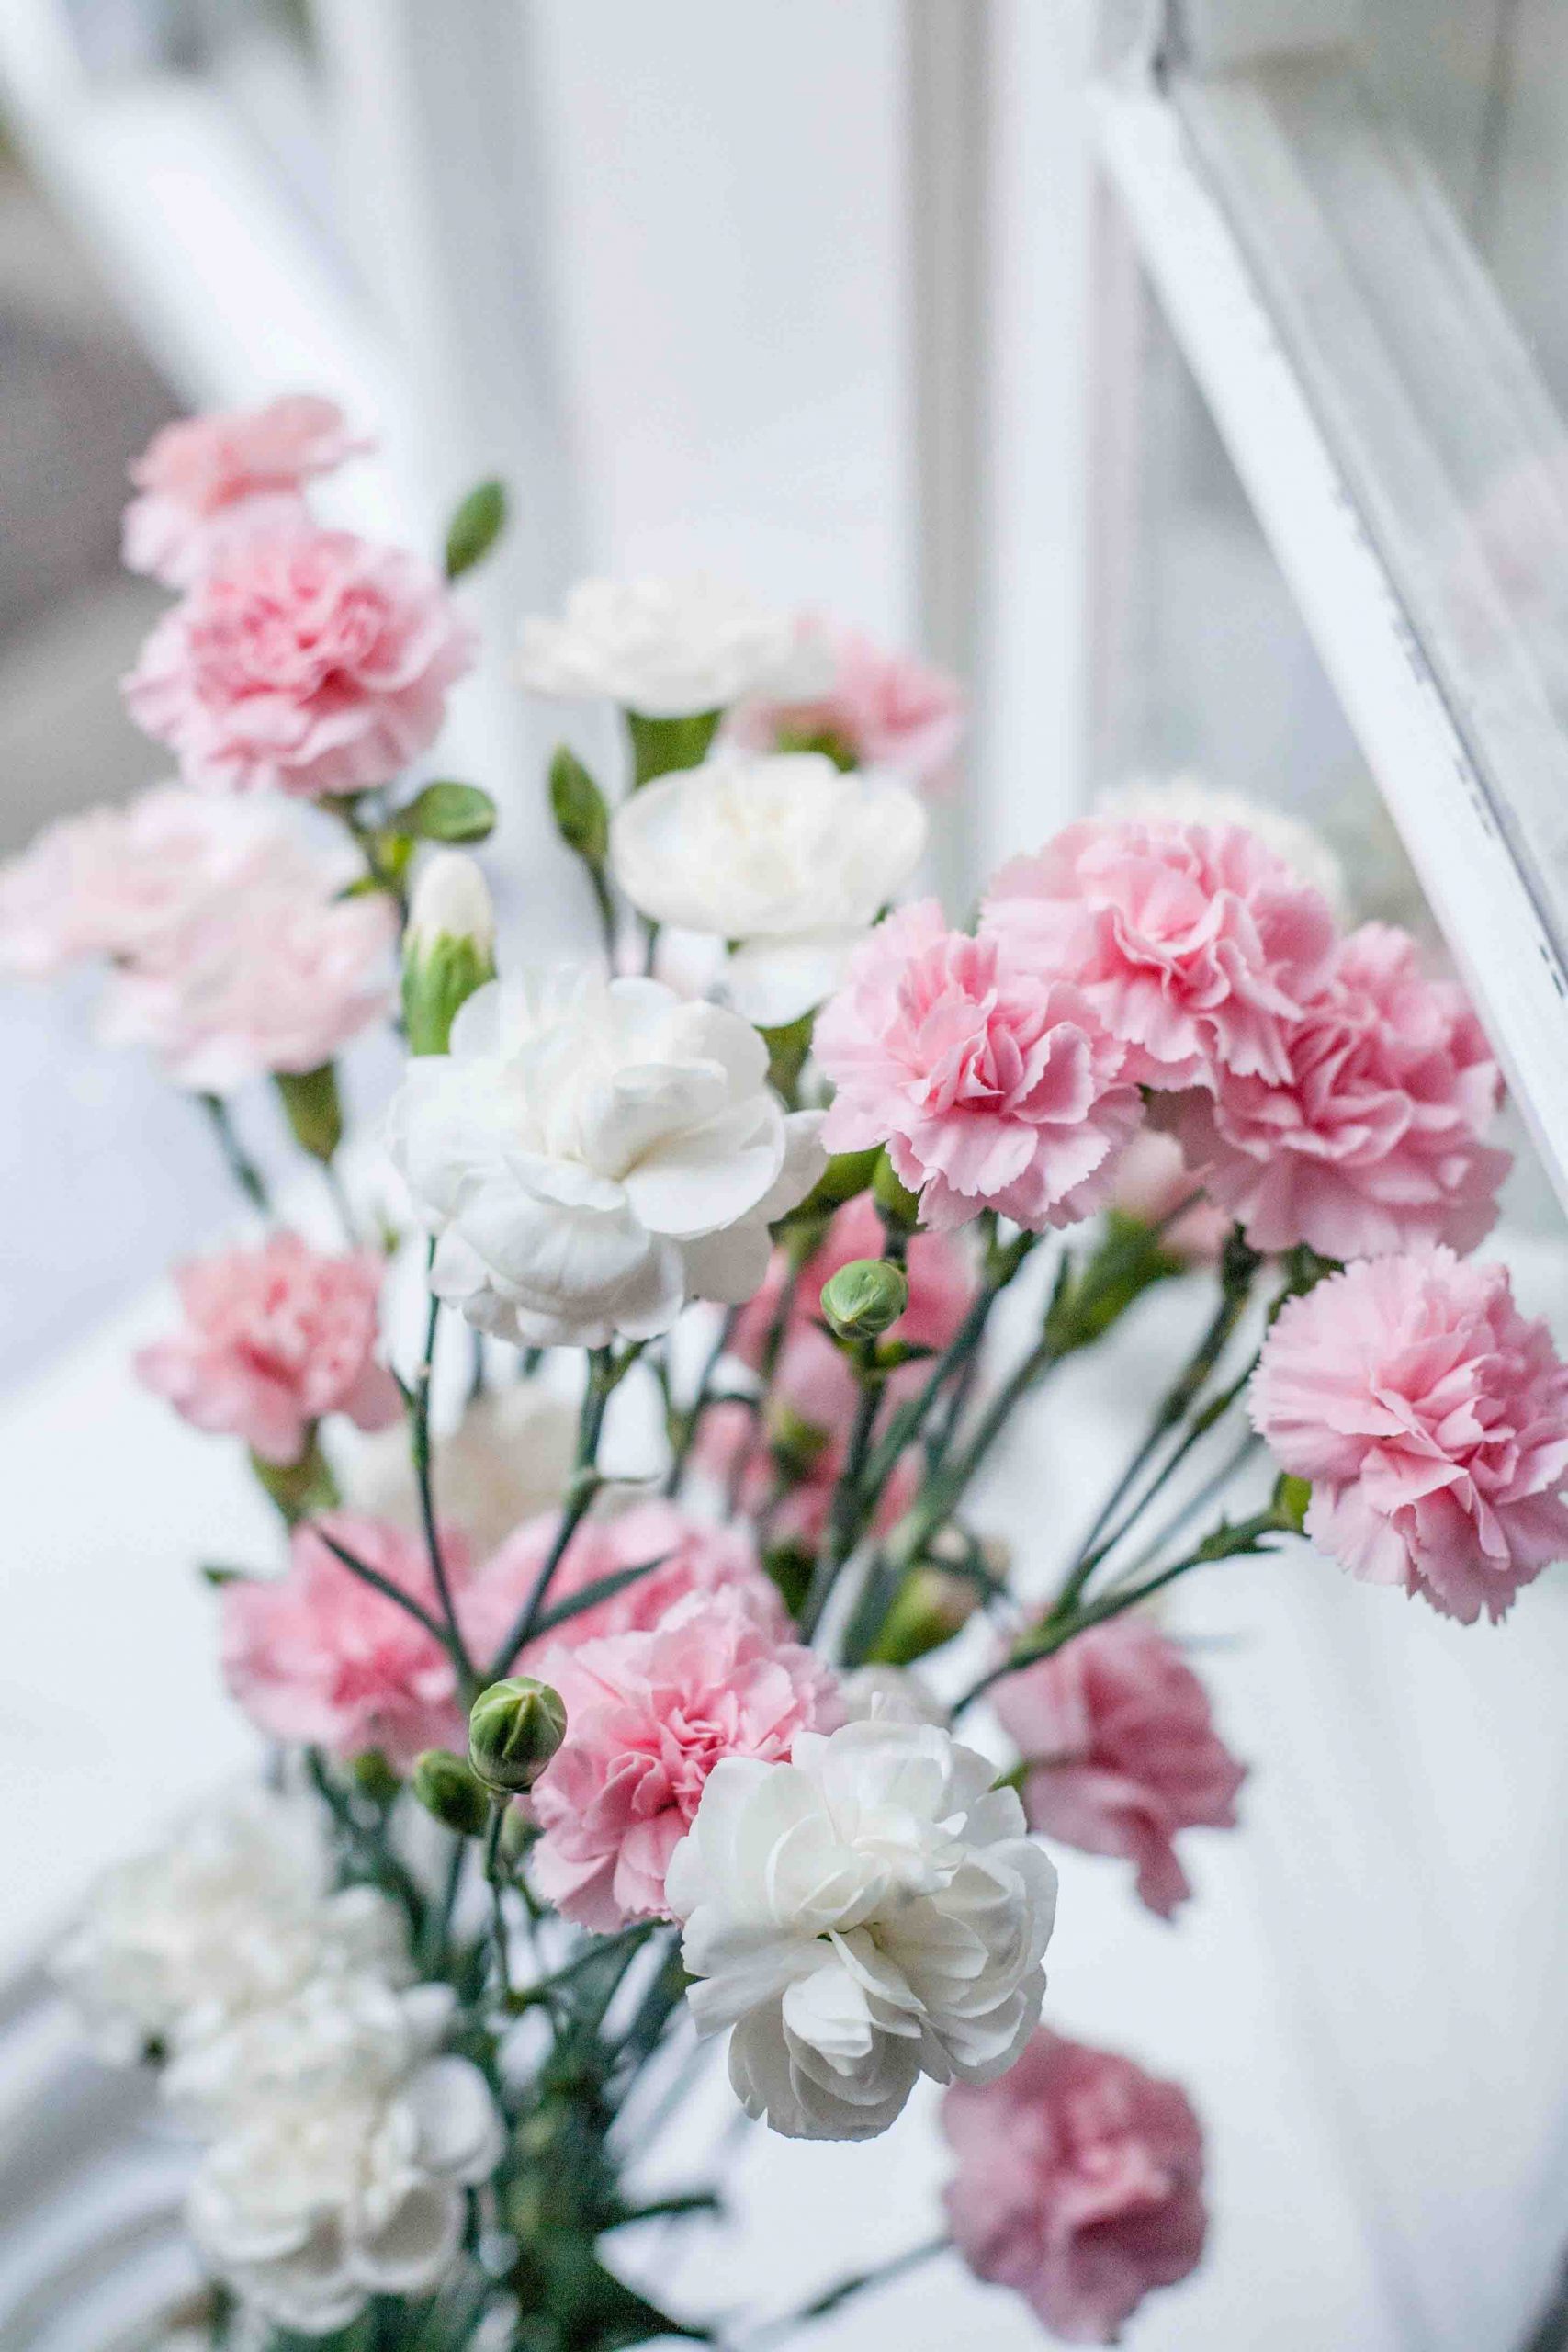 hoa cẩm chướng tượng trưng cho tình yêu